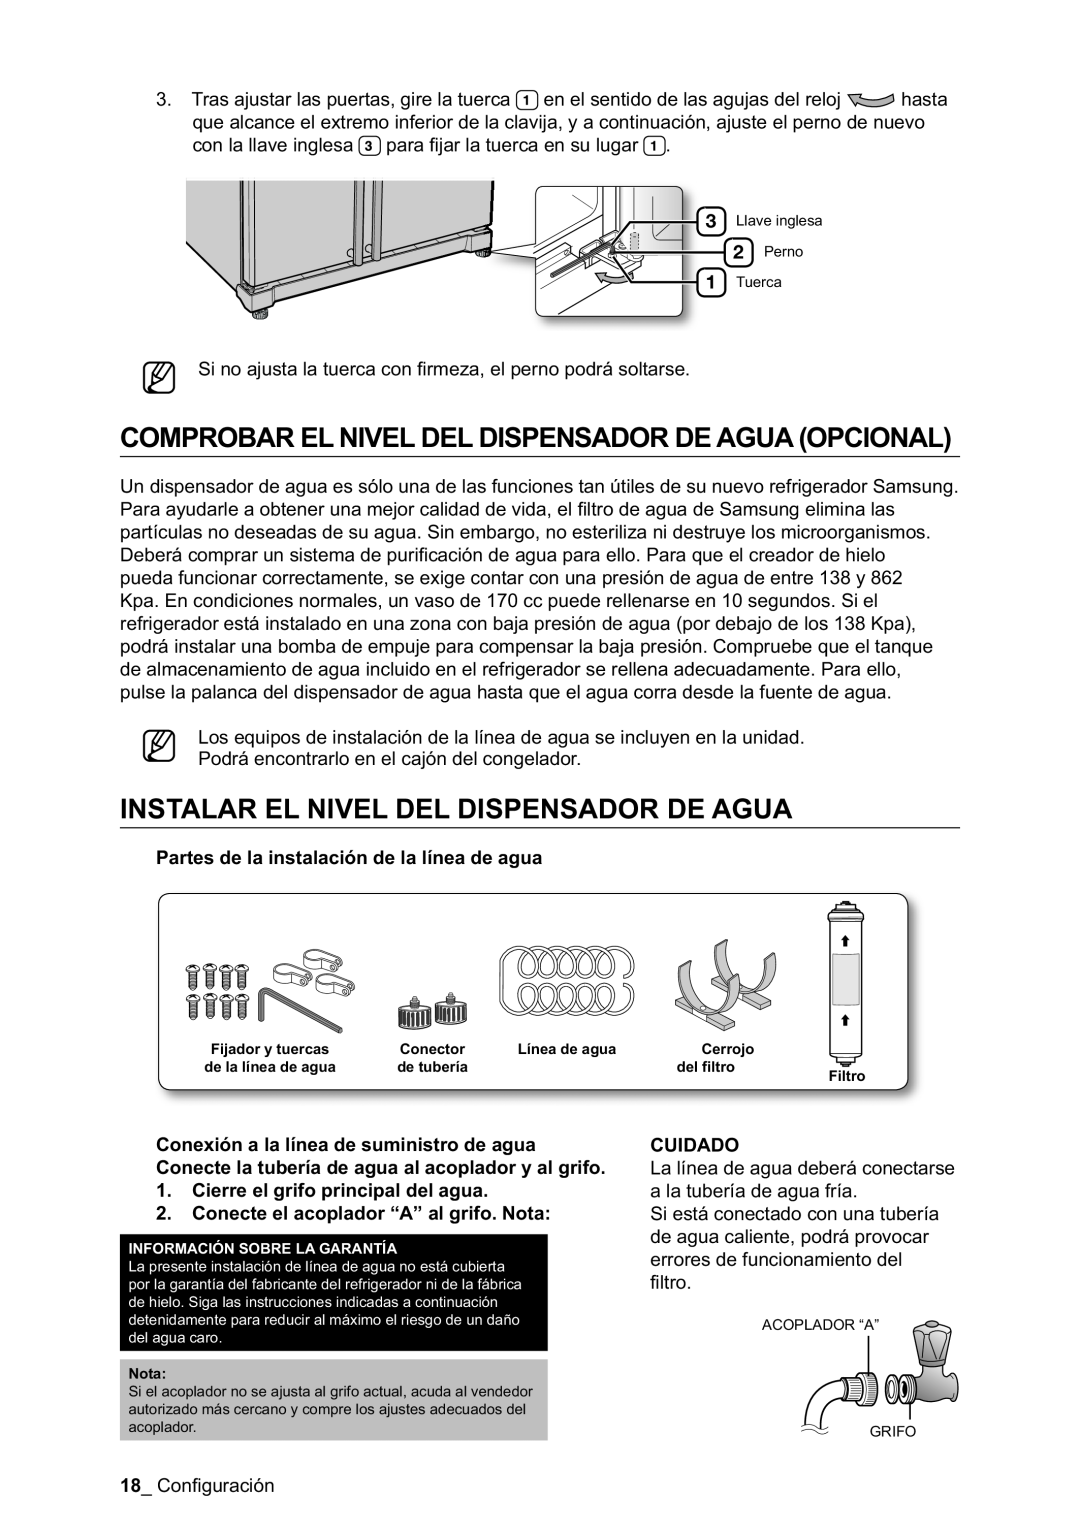 Samsung RSA1NTPE1/XES manual Comprobar El Nivel Del Dispensador De Agua Opcional, Instalar El Nivel Del Dispensador De Agua 